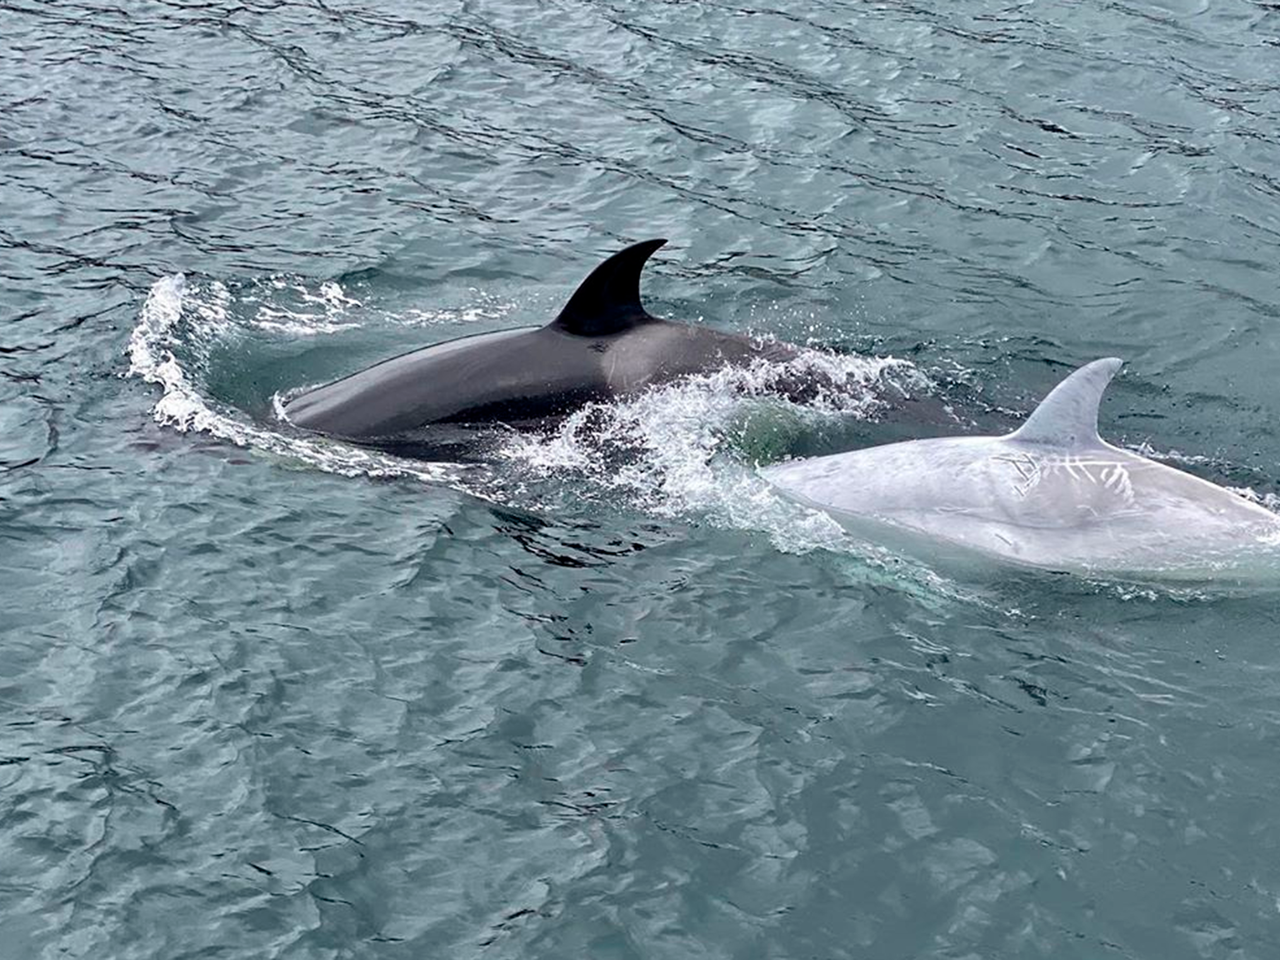 Редчайший кит-убийца белого окраса удивил туристов и попал на видео: Звери:  Из жизни: Lenta.ru